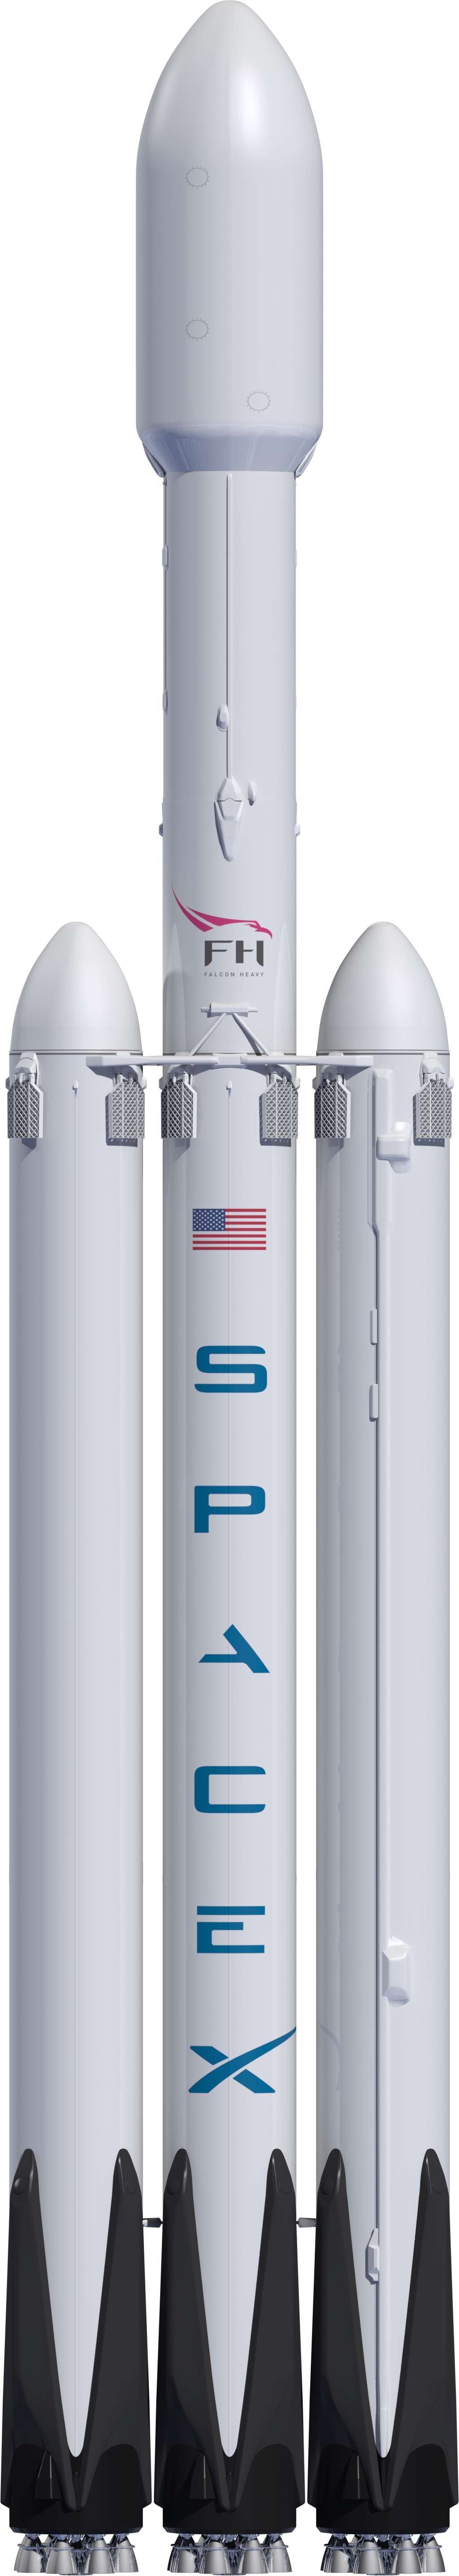 Le futur lanceur lourd de SpaceX, le Falcon Heavy. © SpaceX